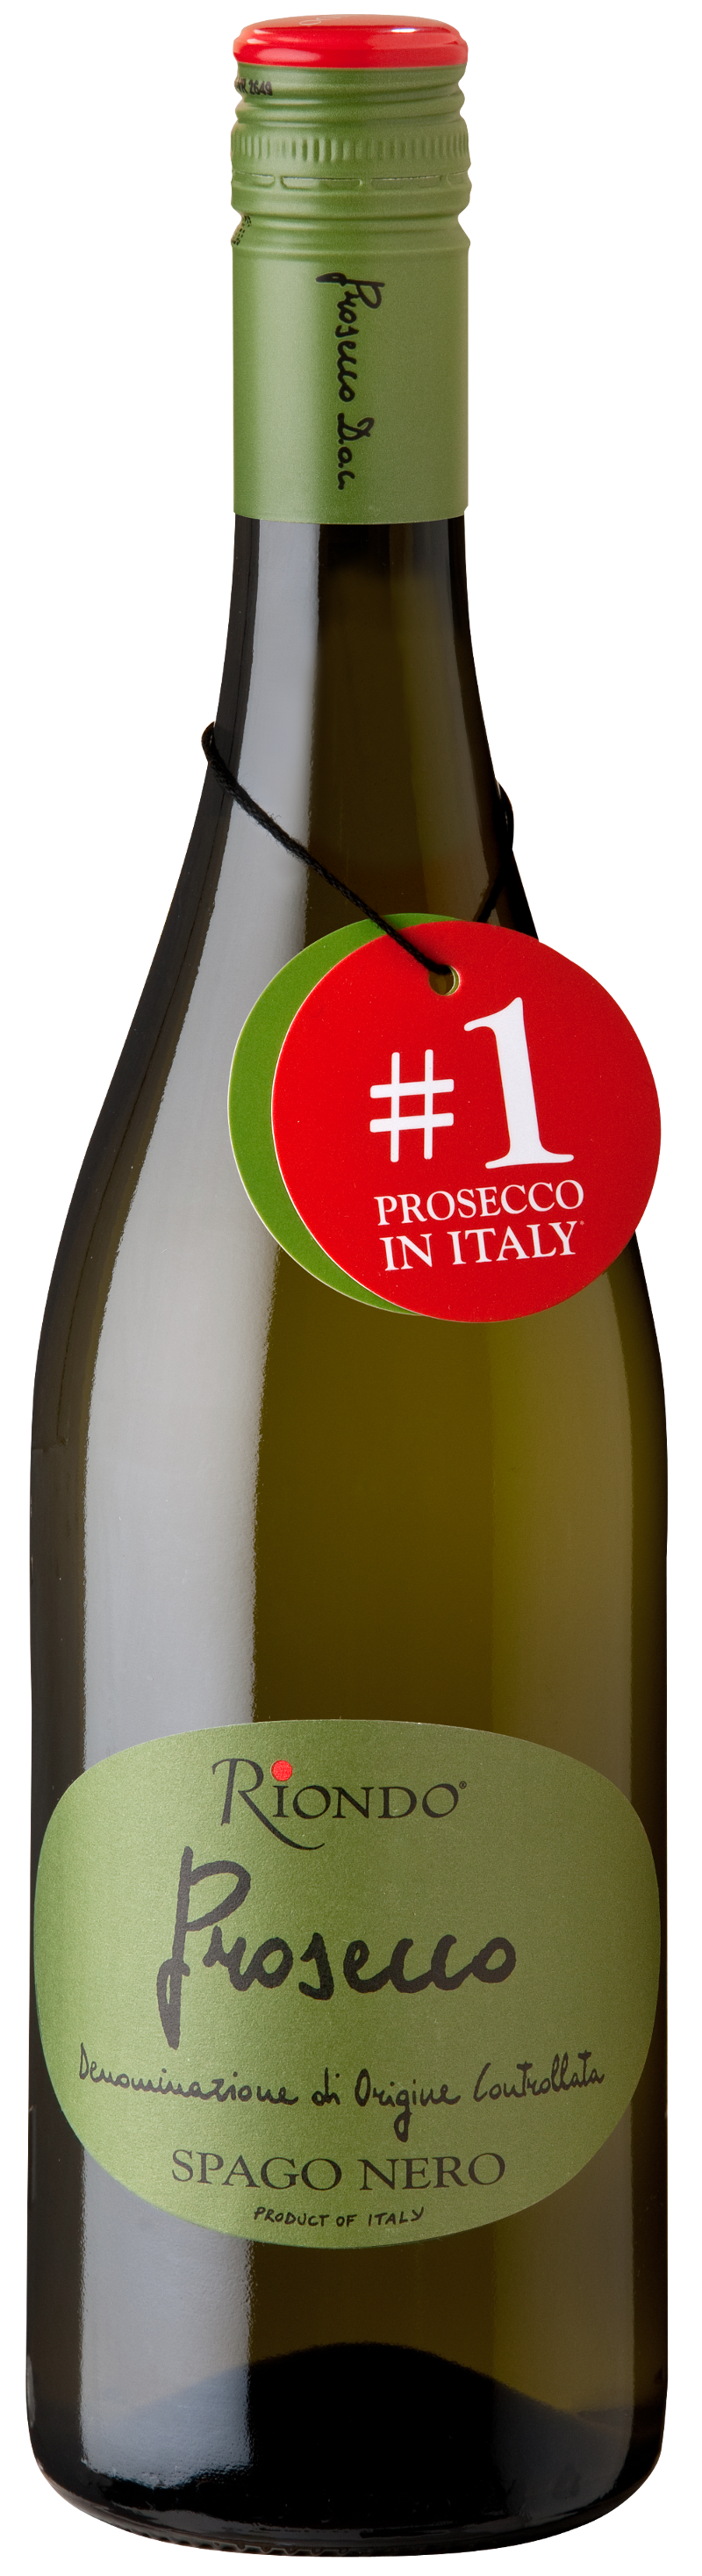 Prosecco frizzante. Вино Riondo Prosecco. Вино игристое Риондо Просекко Фризанте. Вино Просекко Грин лейбл. Вино игристое Риондо Просекко Спаго.